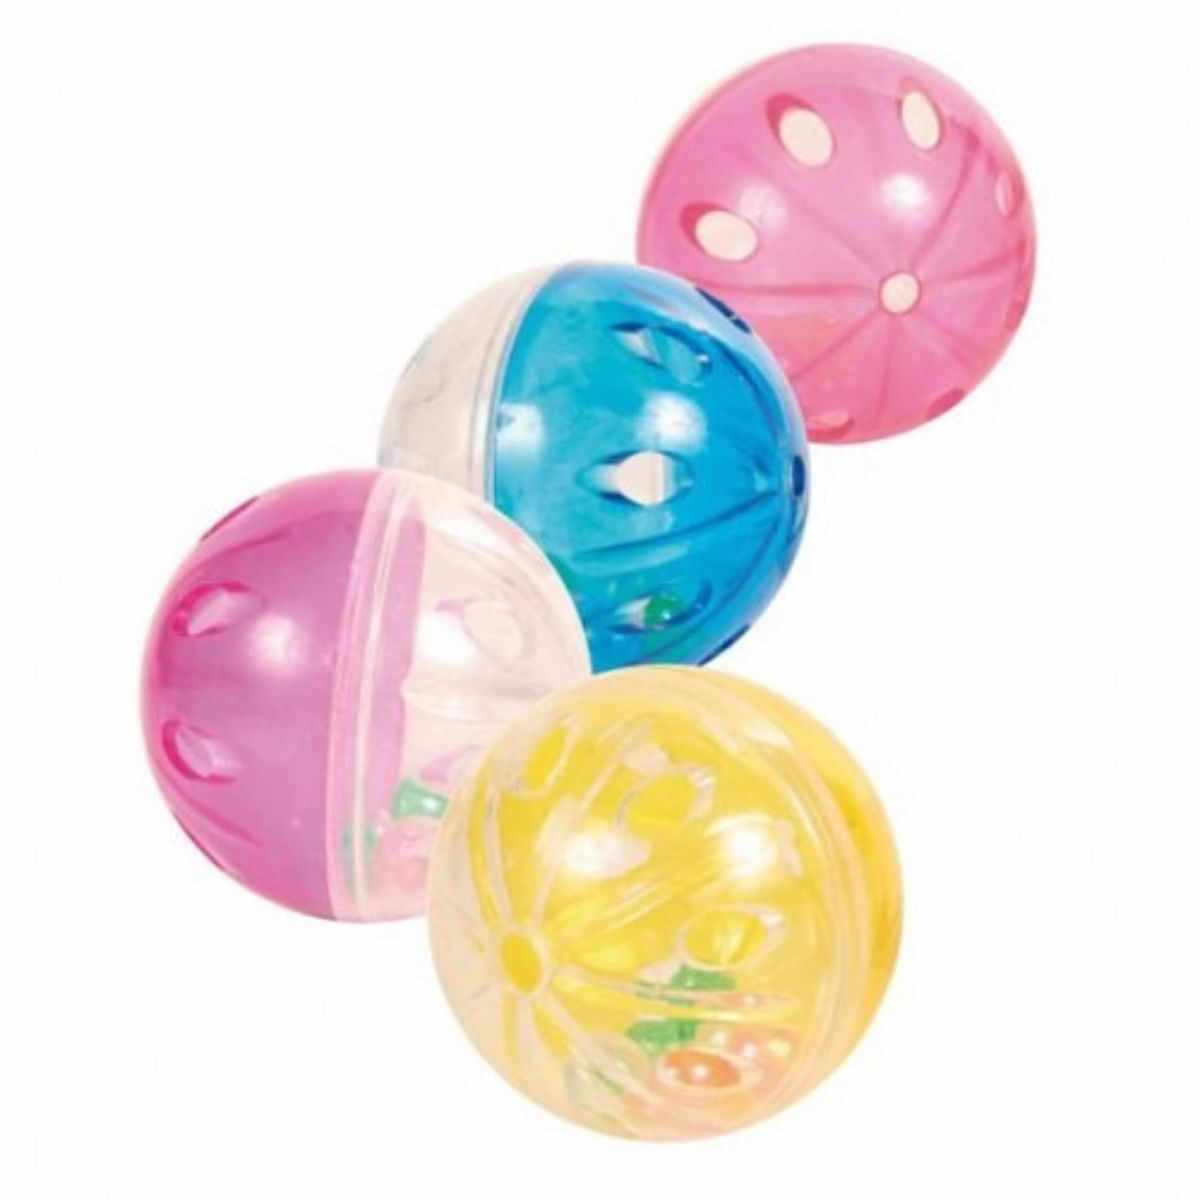 Trixie, minge cu clopoțel, jucărie, pisici, plastic, multicolor, 4.5cm, 4 buc